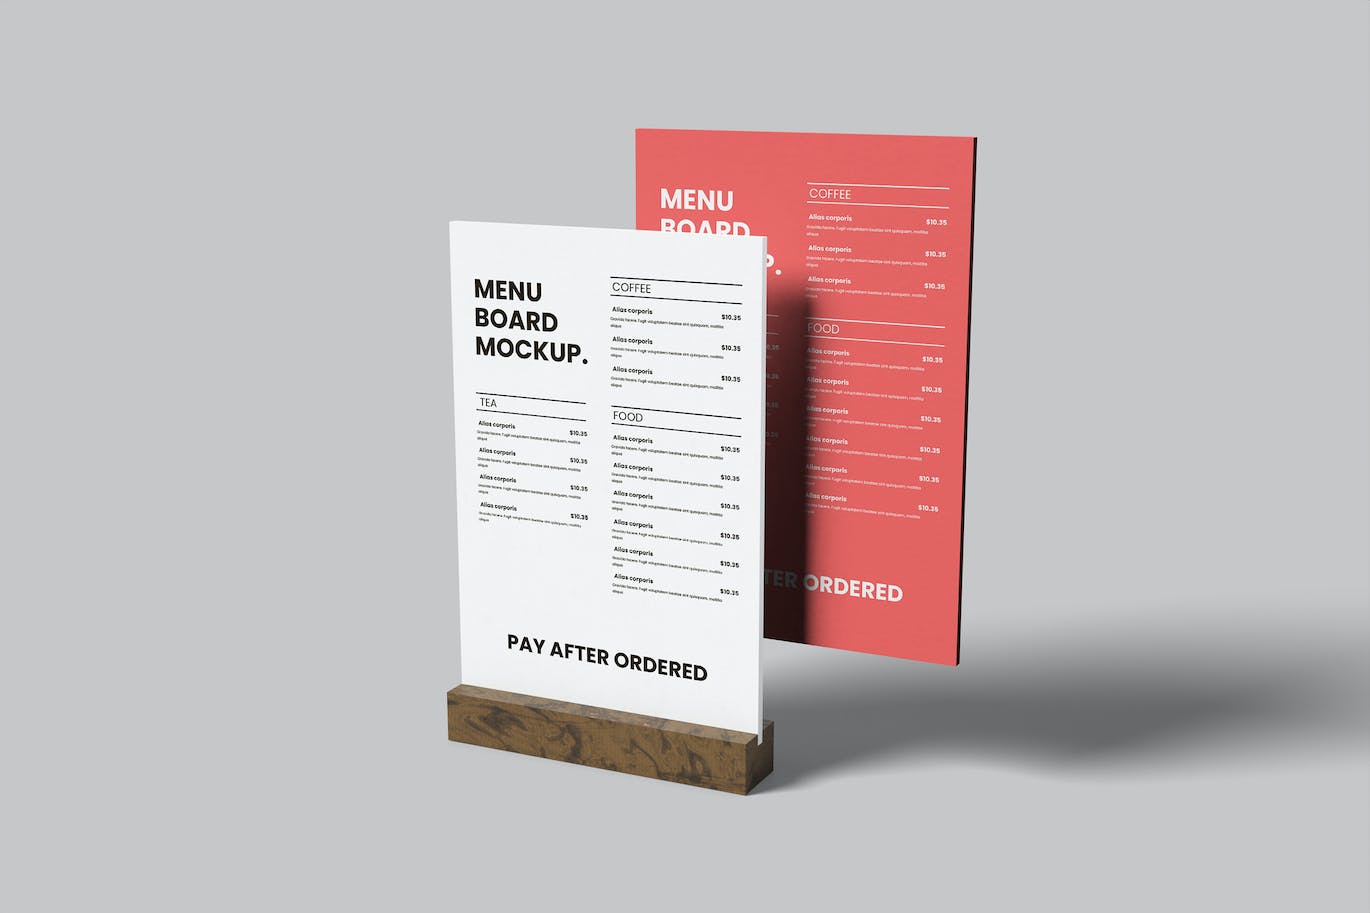 极简菜单板餐桌号牌设计样机 Minimalist Menu Board Mockup 样机素材 第1张